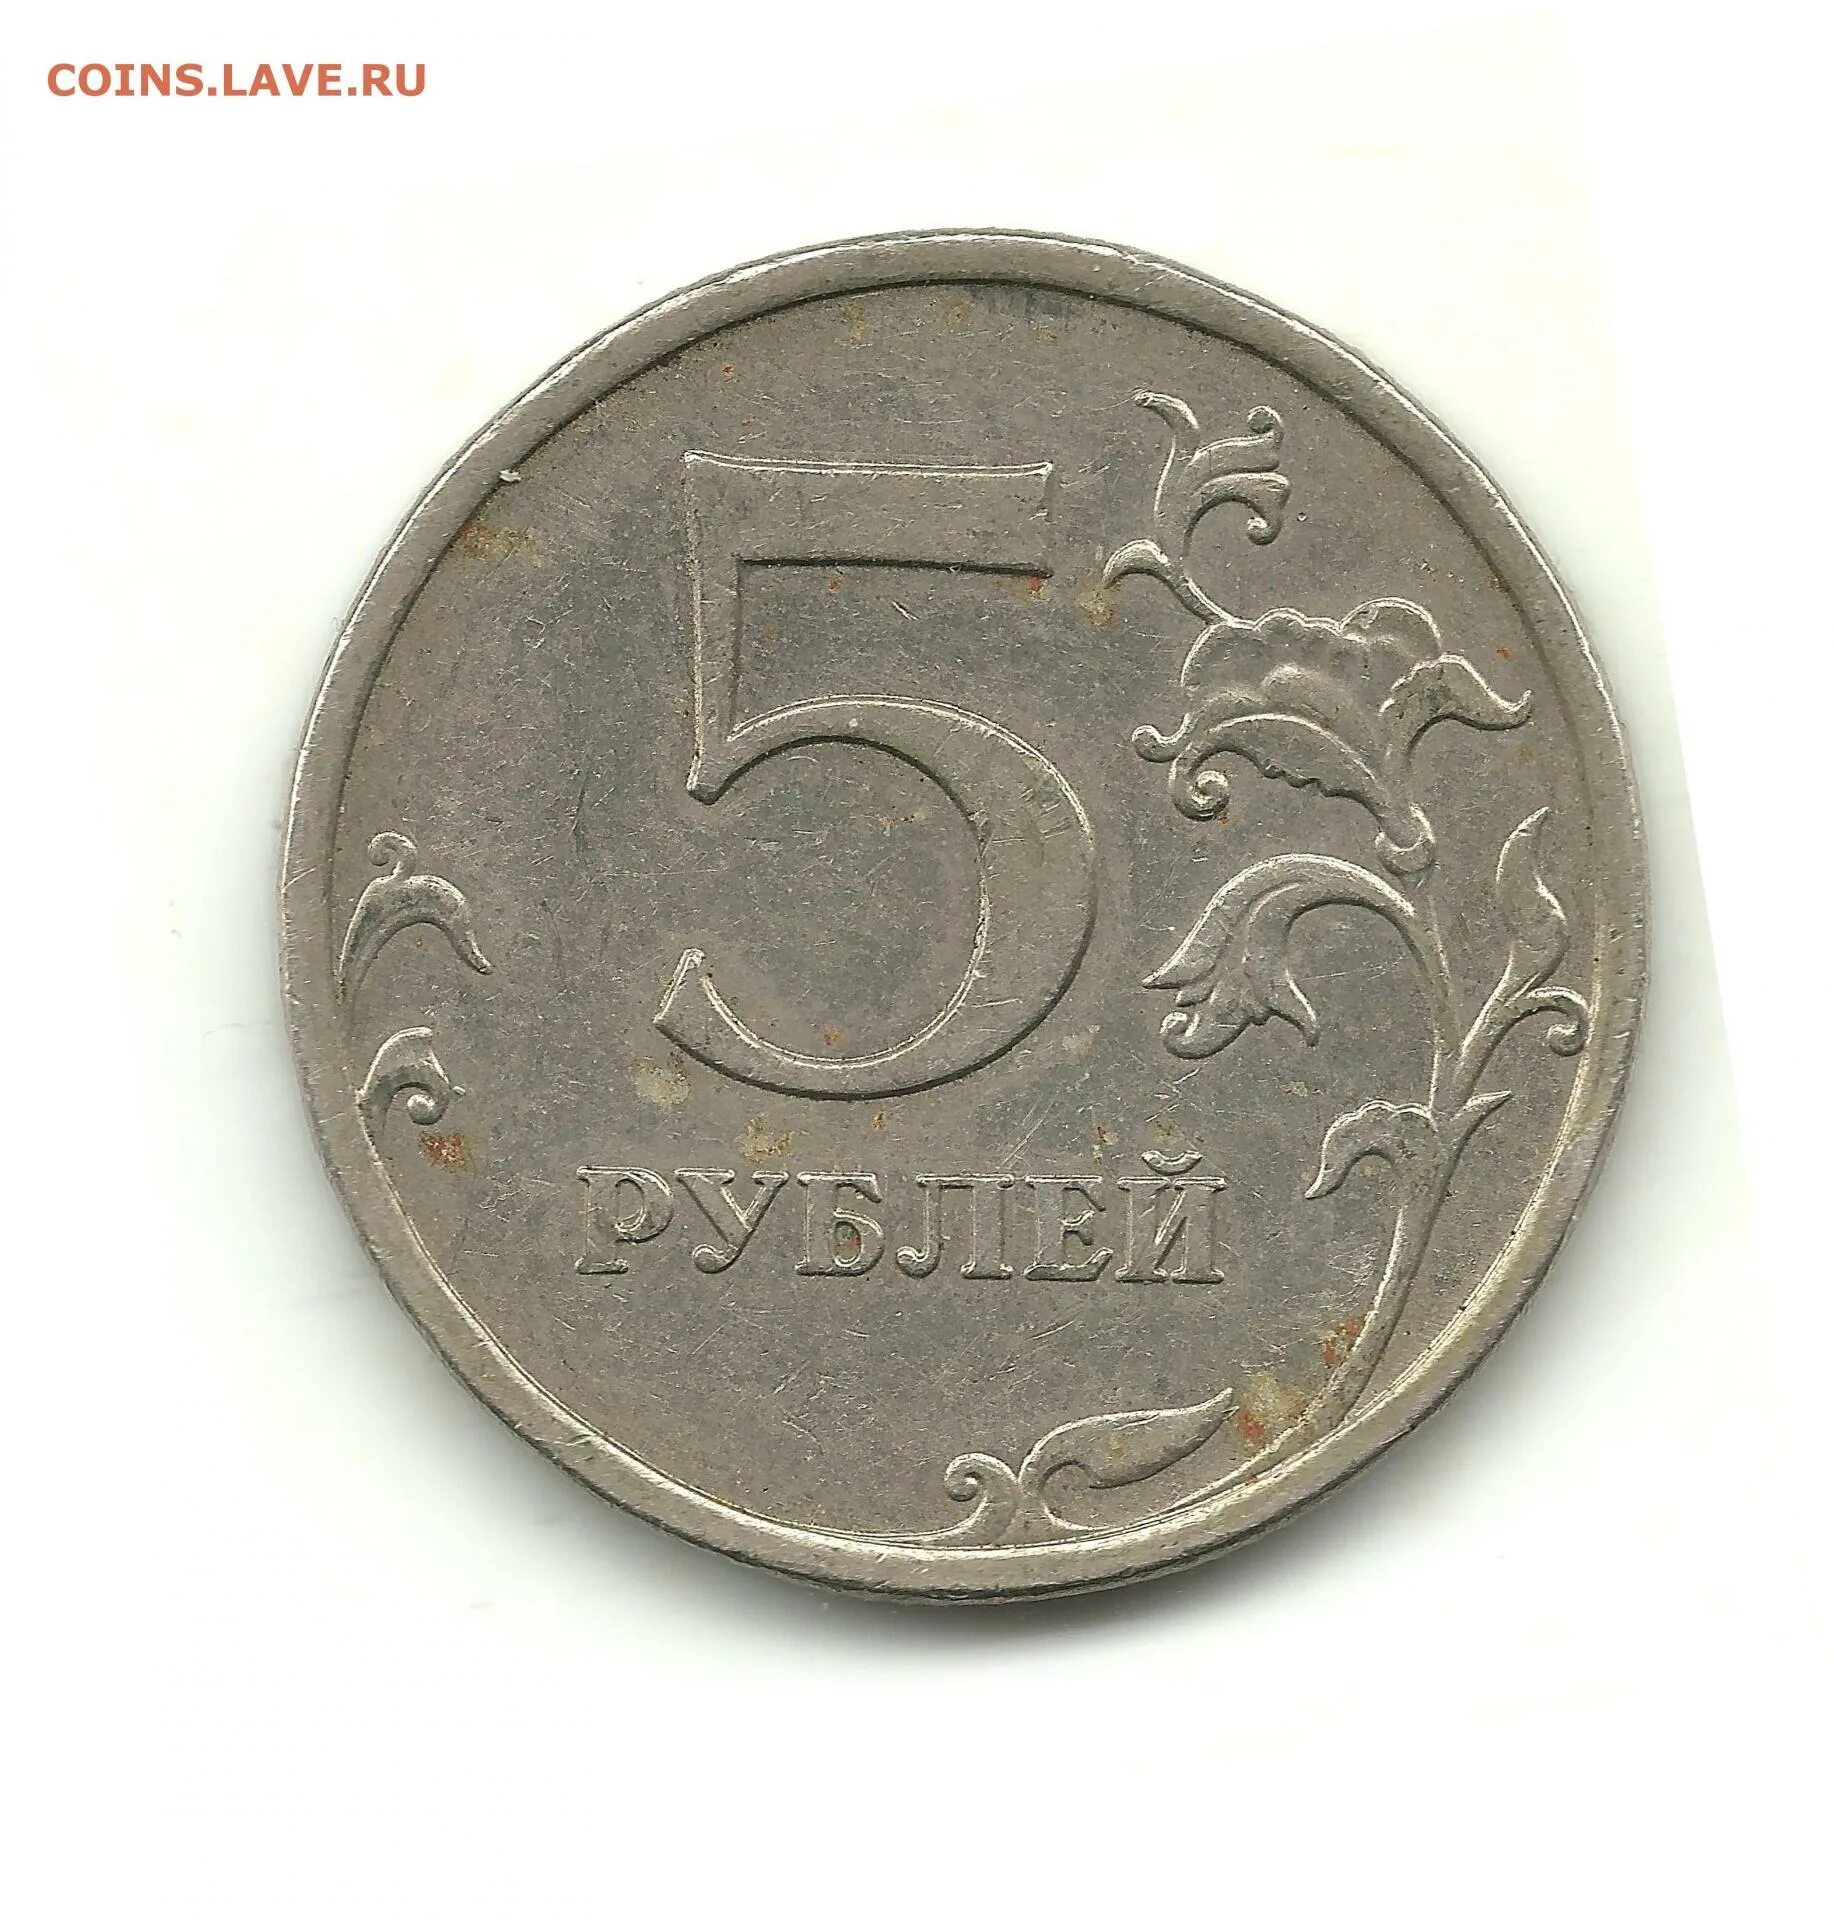 5 рублей 2009 ммд. Редкие 5 Курус.